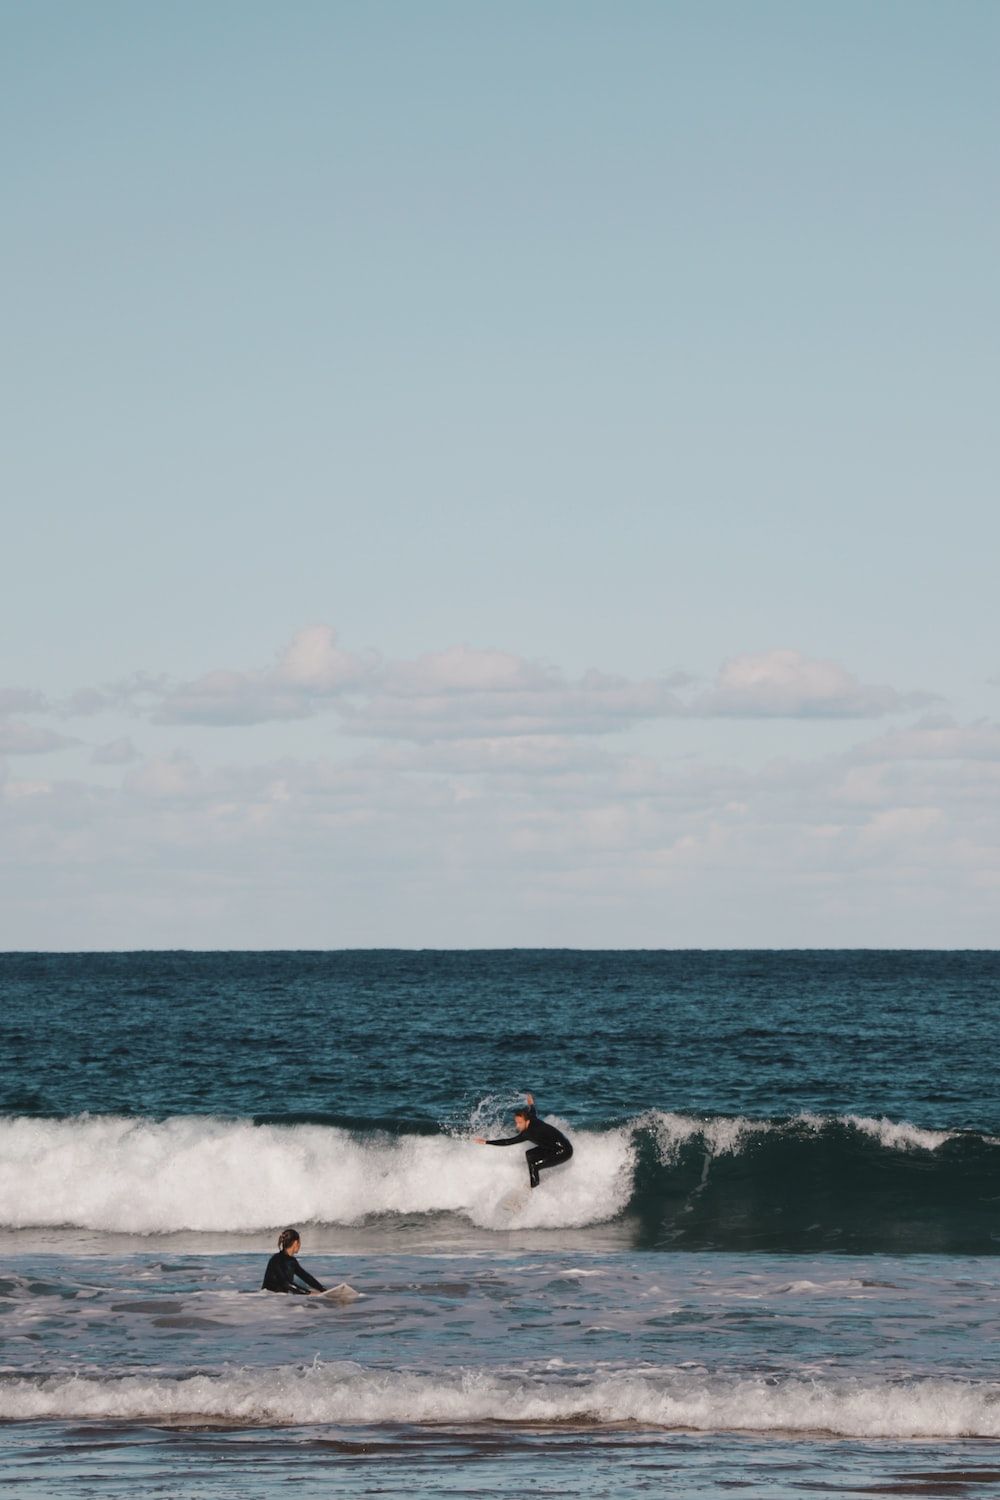  Surfen Hintergrundbild 1000x1500. Man surfing on sea waves during daytime photo